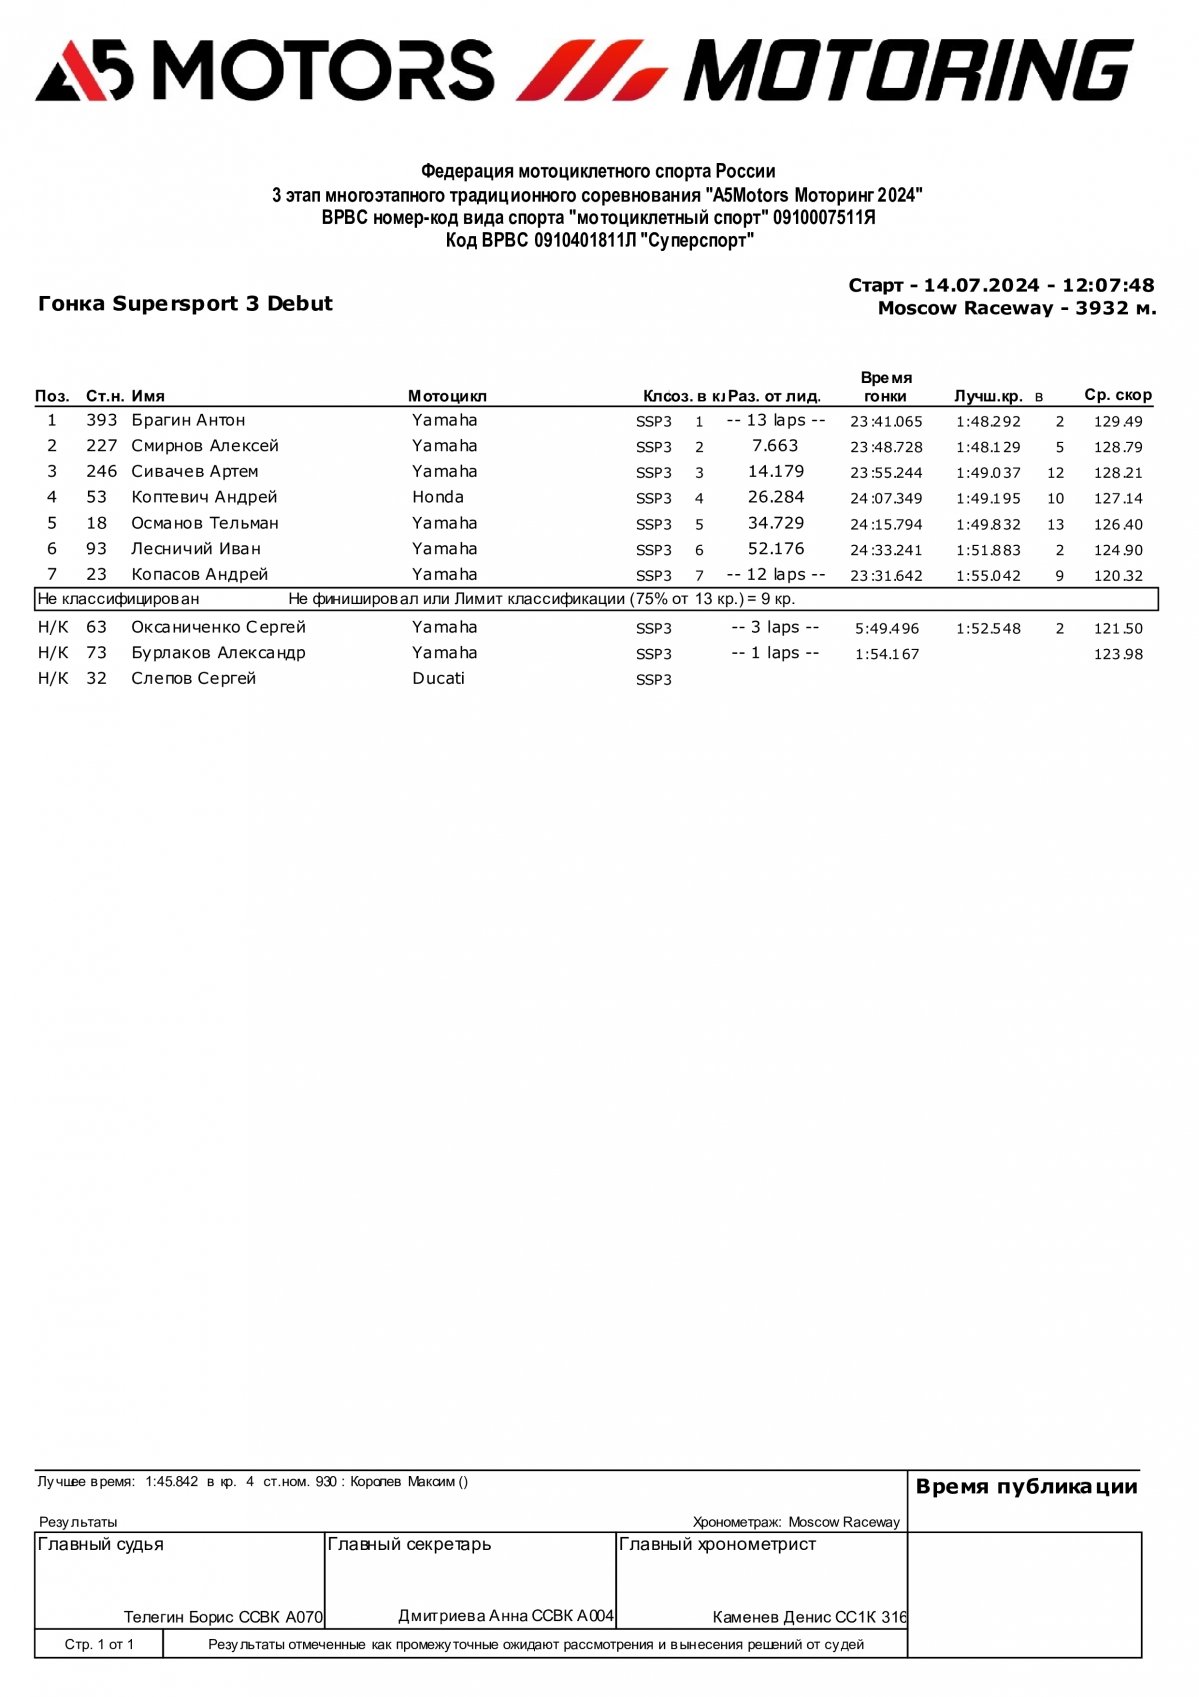 Предварительные результаты зачета Дебют гонки 3 этапа чемпионата A5Motors Motoring в классе SSP3